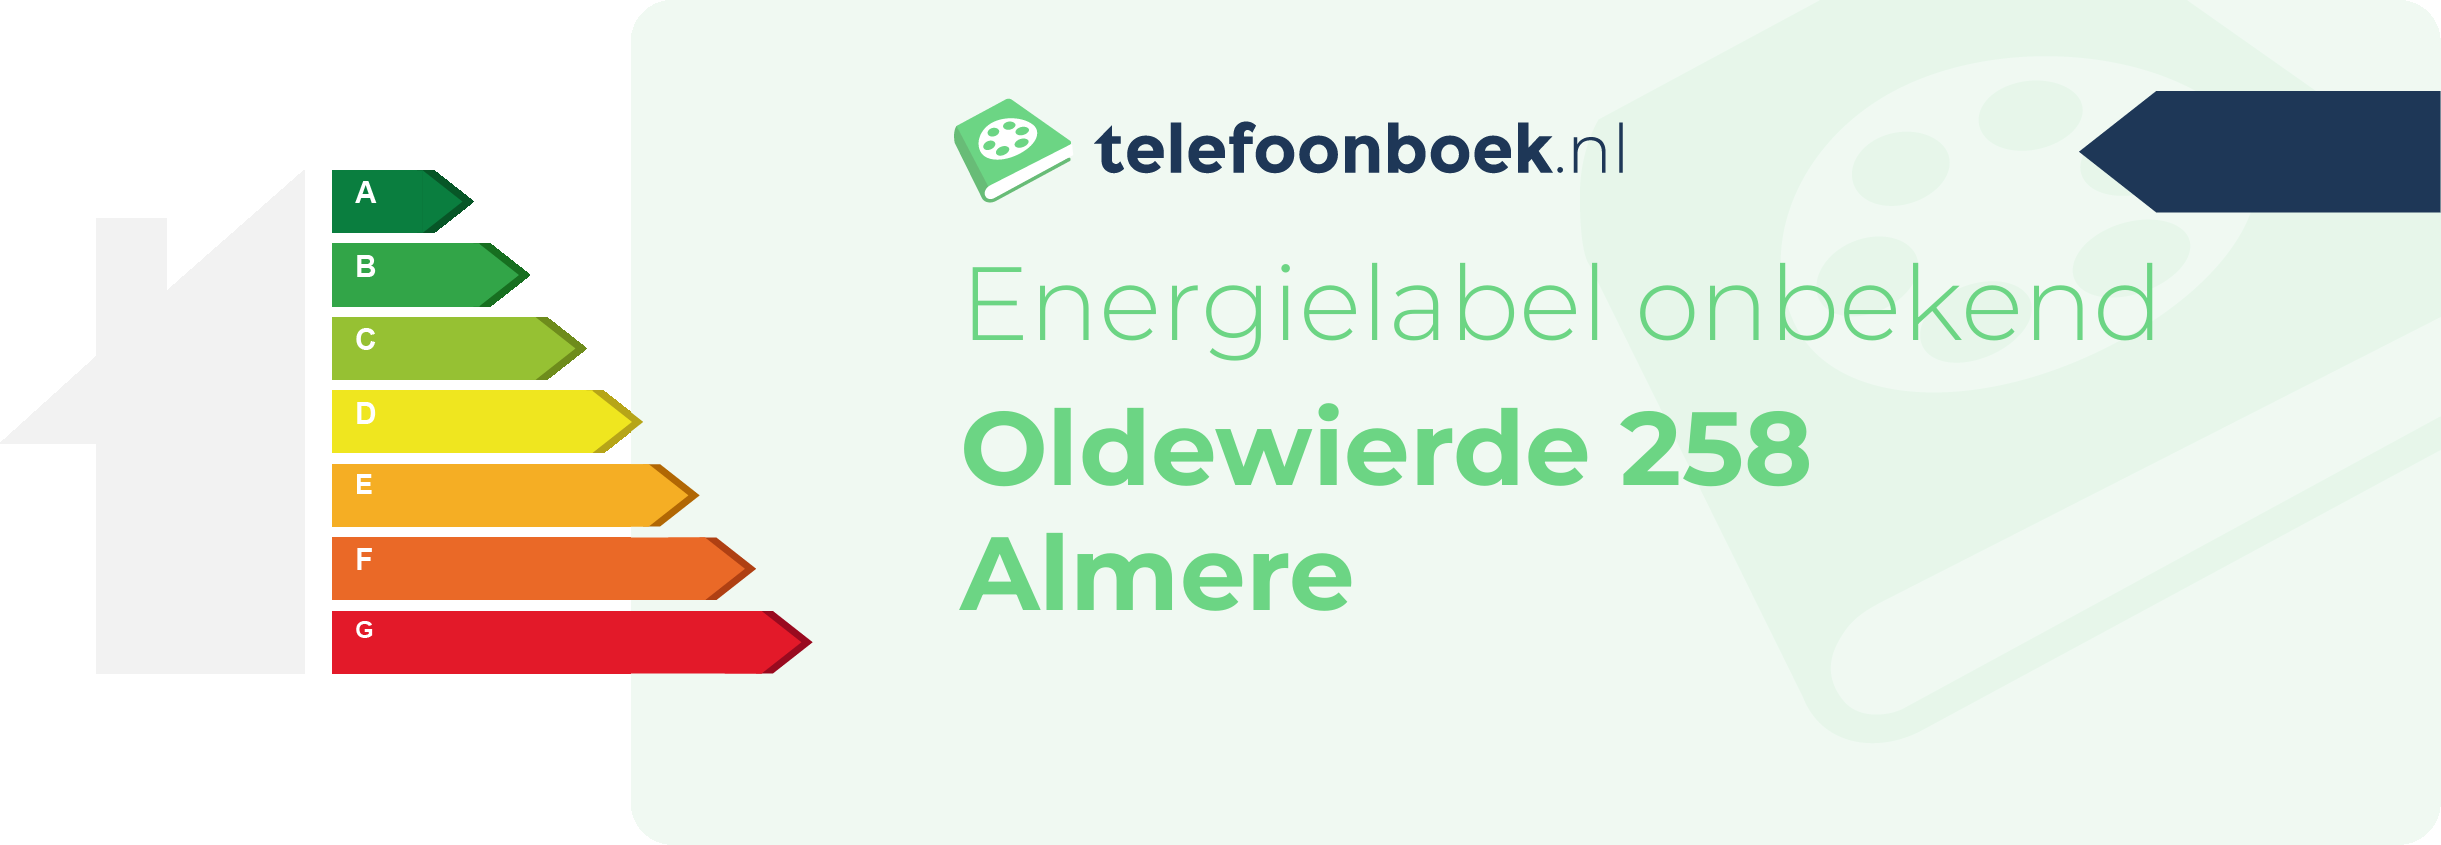 Energielabel Oldewierde 258 Almere